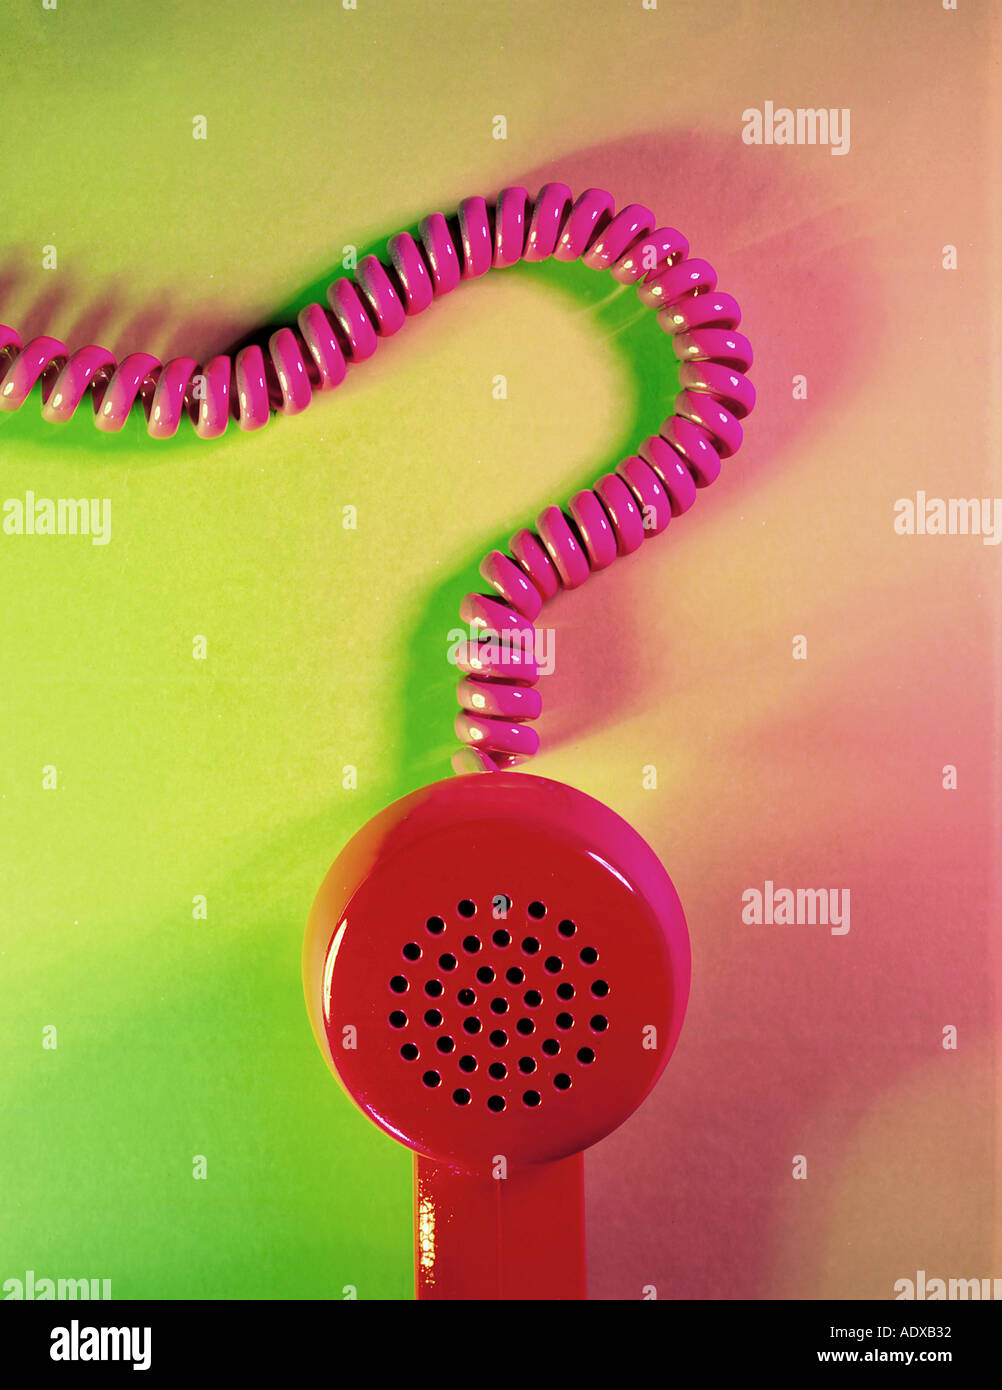 Concetti ricevitore telefonico cavo a spirale di filo rosso verde punto interrogativo stilizzata dubbio boccaglio telefono tecnologia business communi Foto Stock